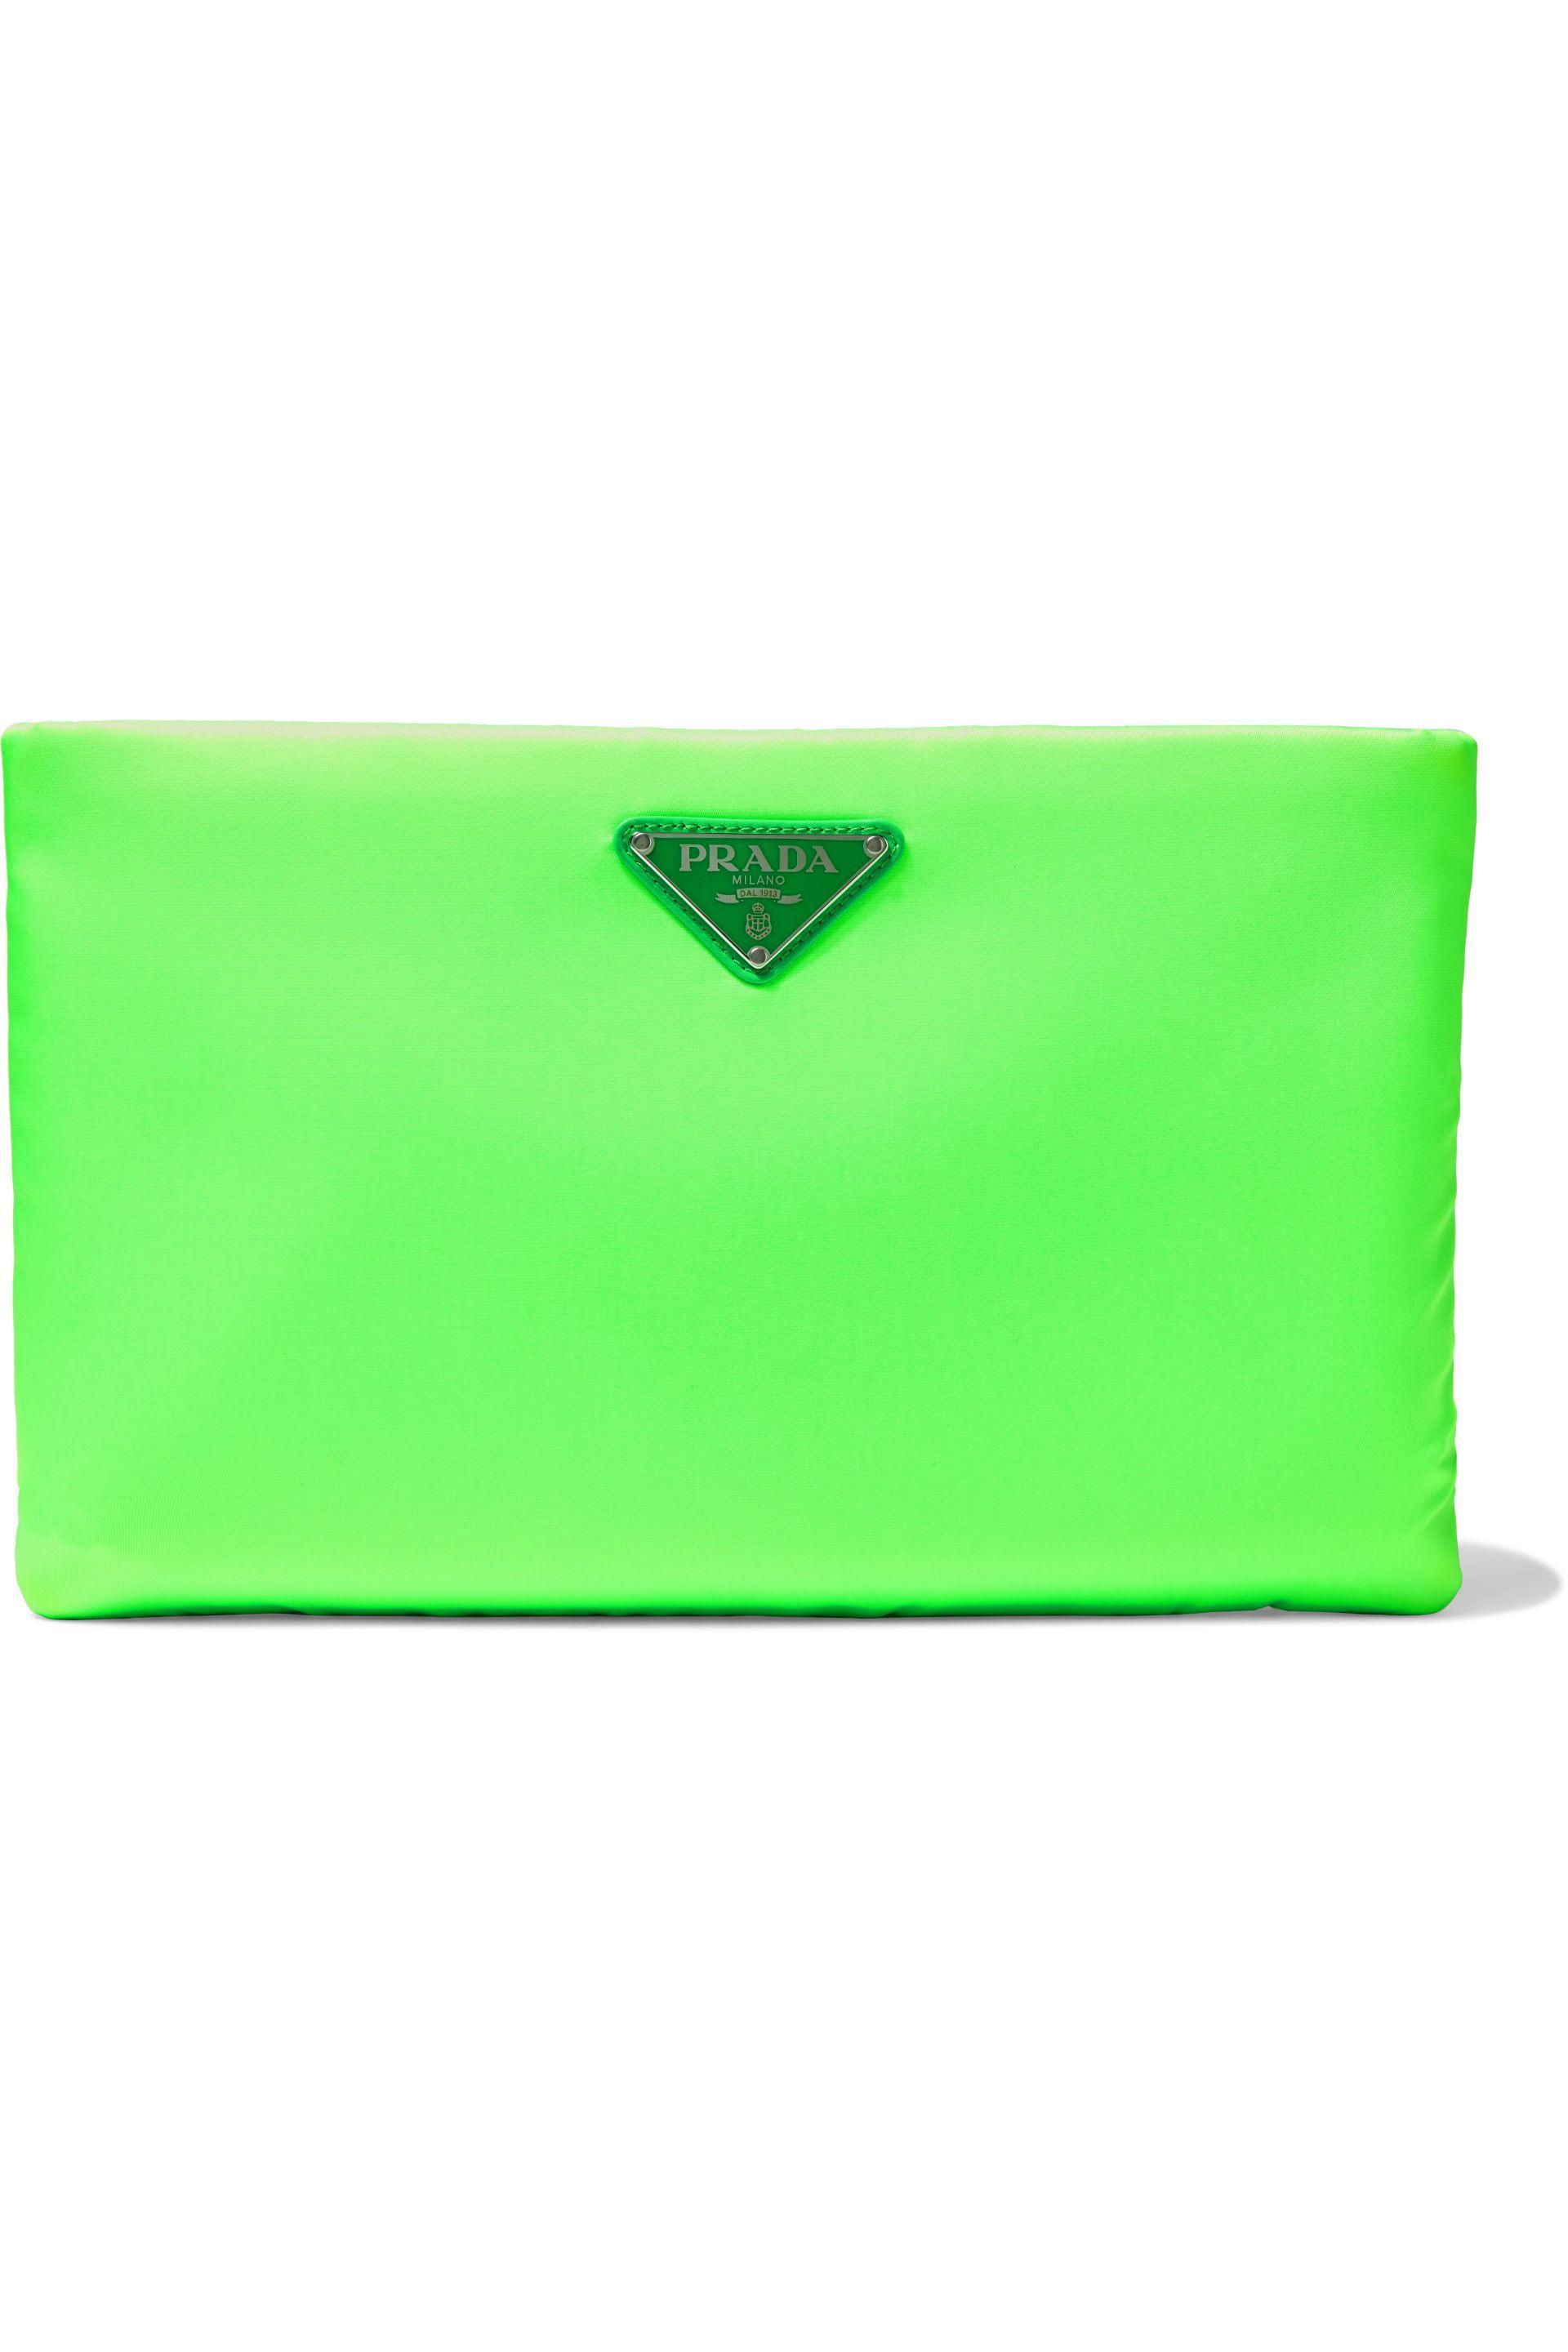 prada bag green